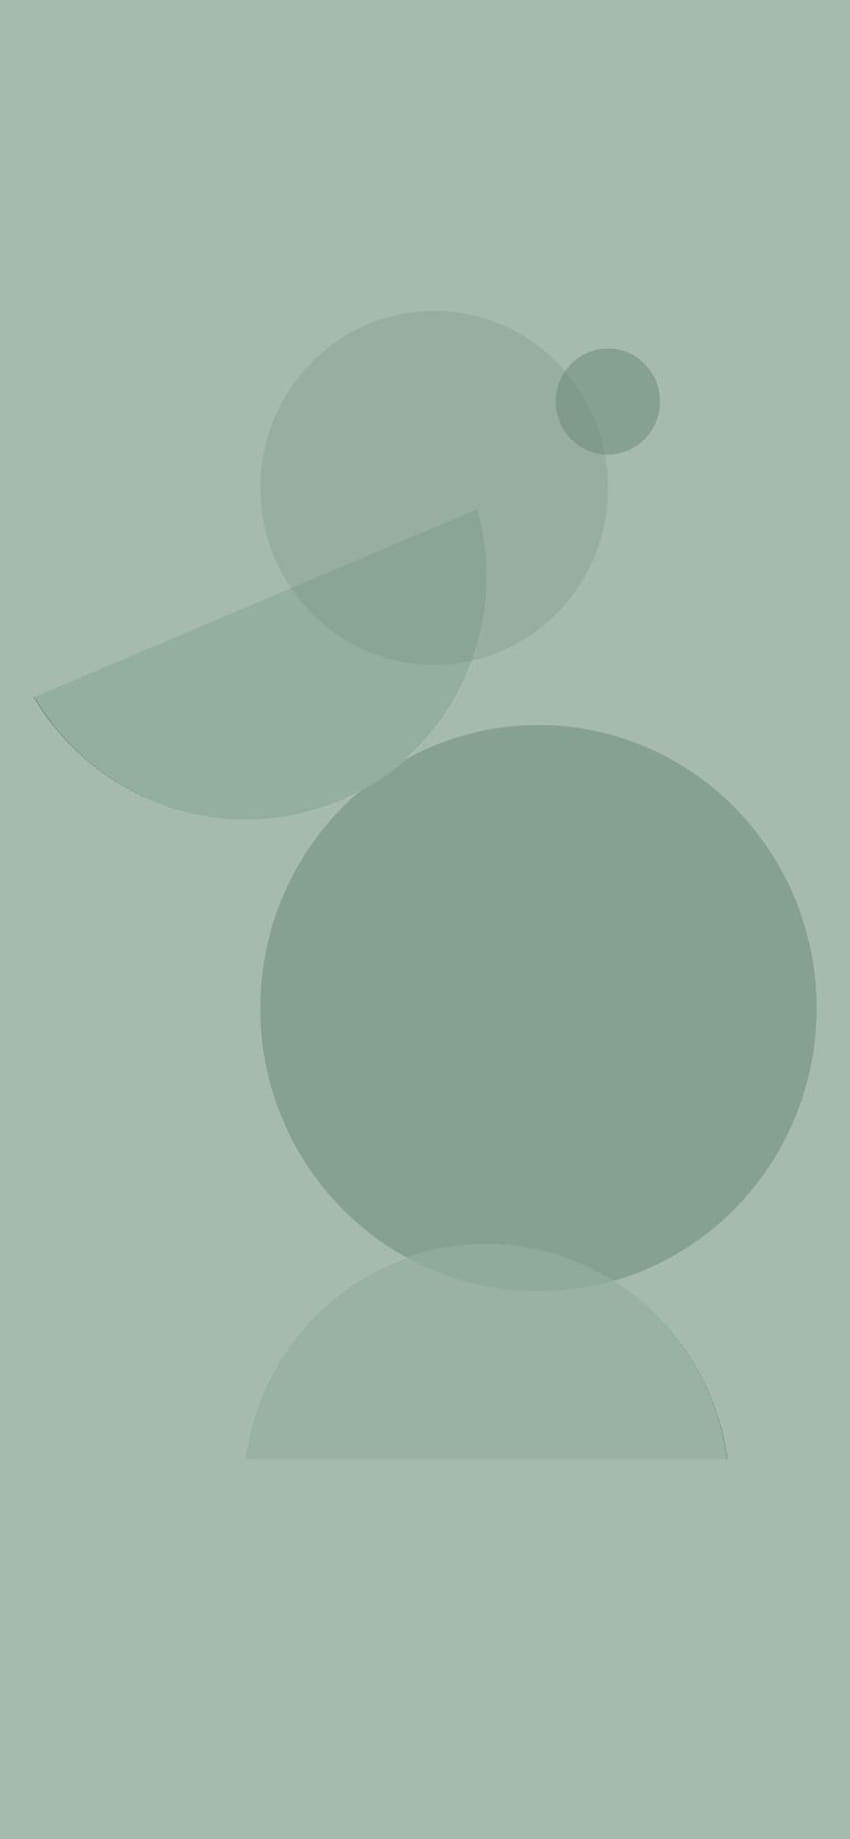 35 Estética verde salvia: s abstractos modernos iPhone, corazón verde salvia fondo de pantalla del teléfono